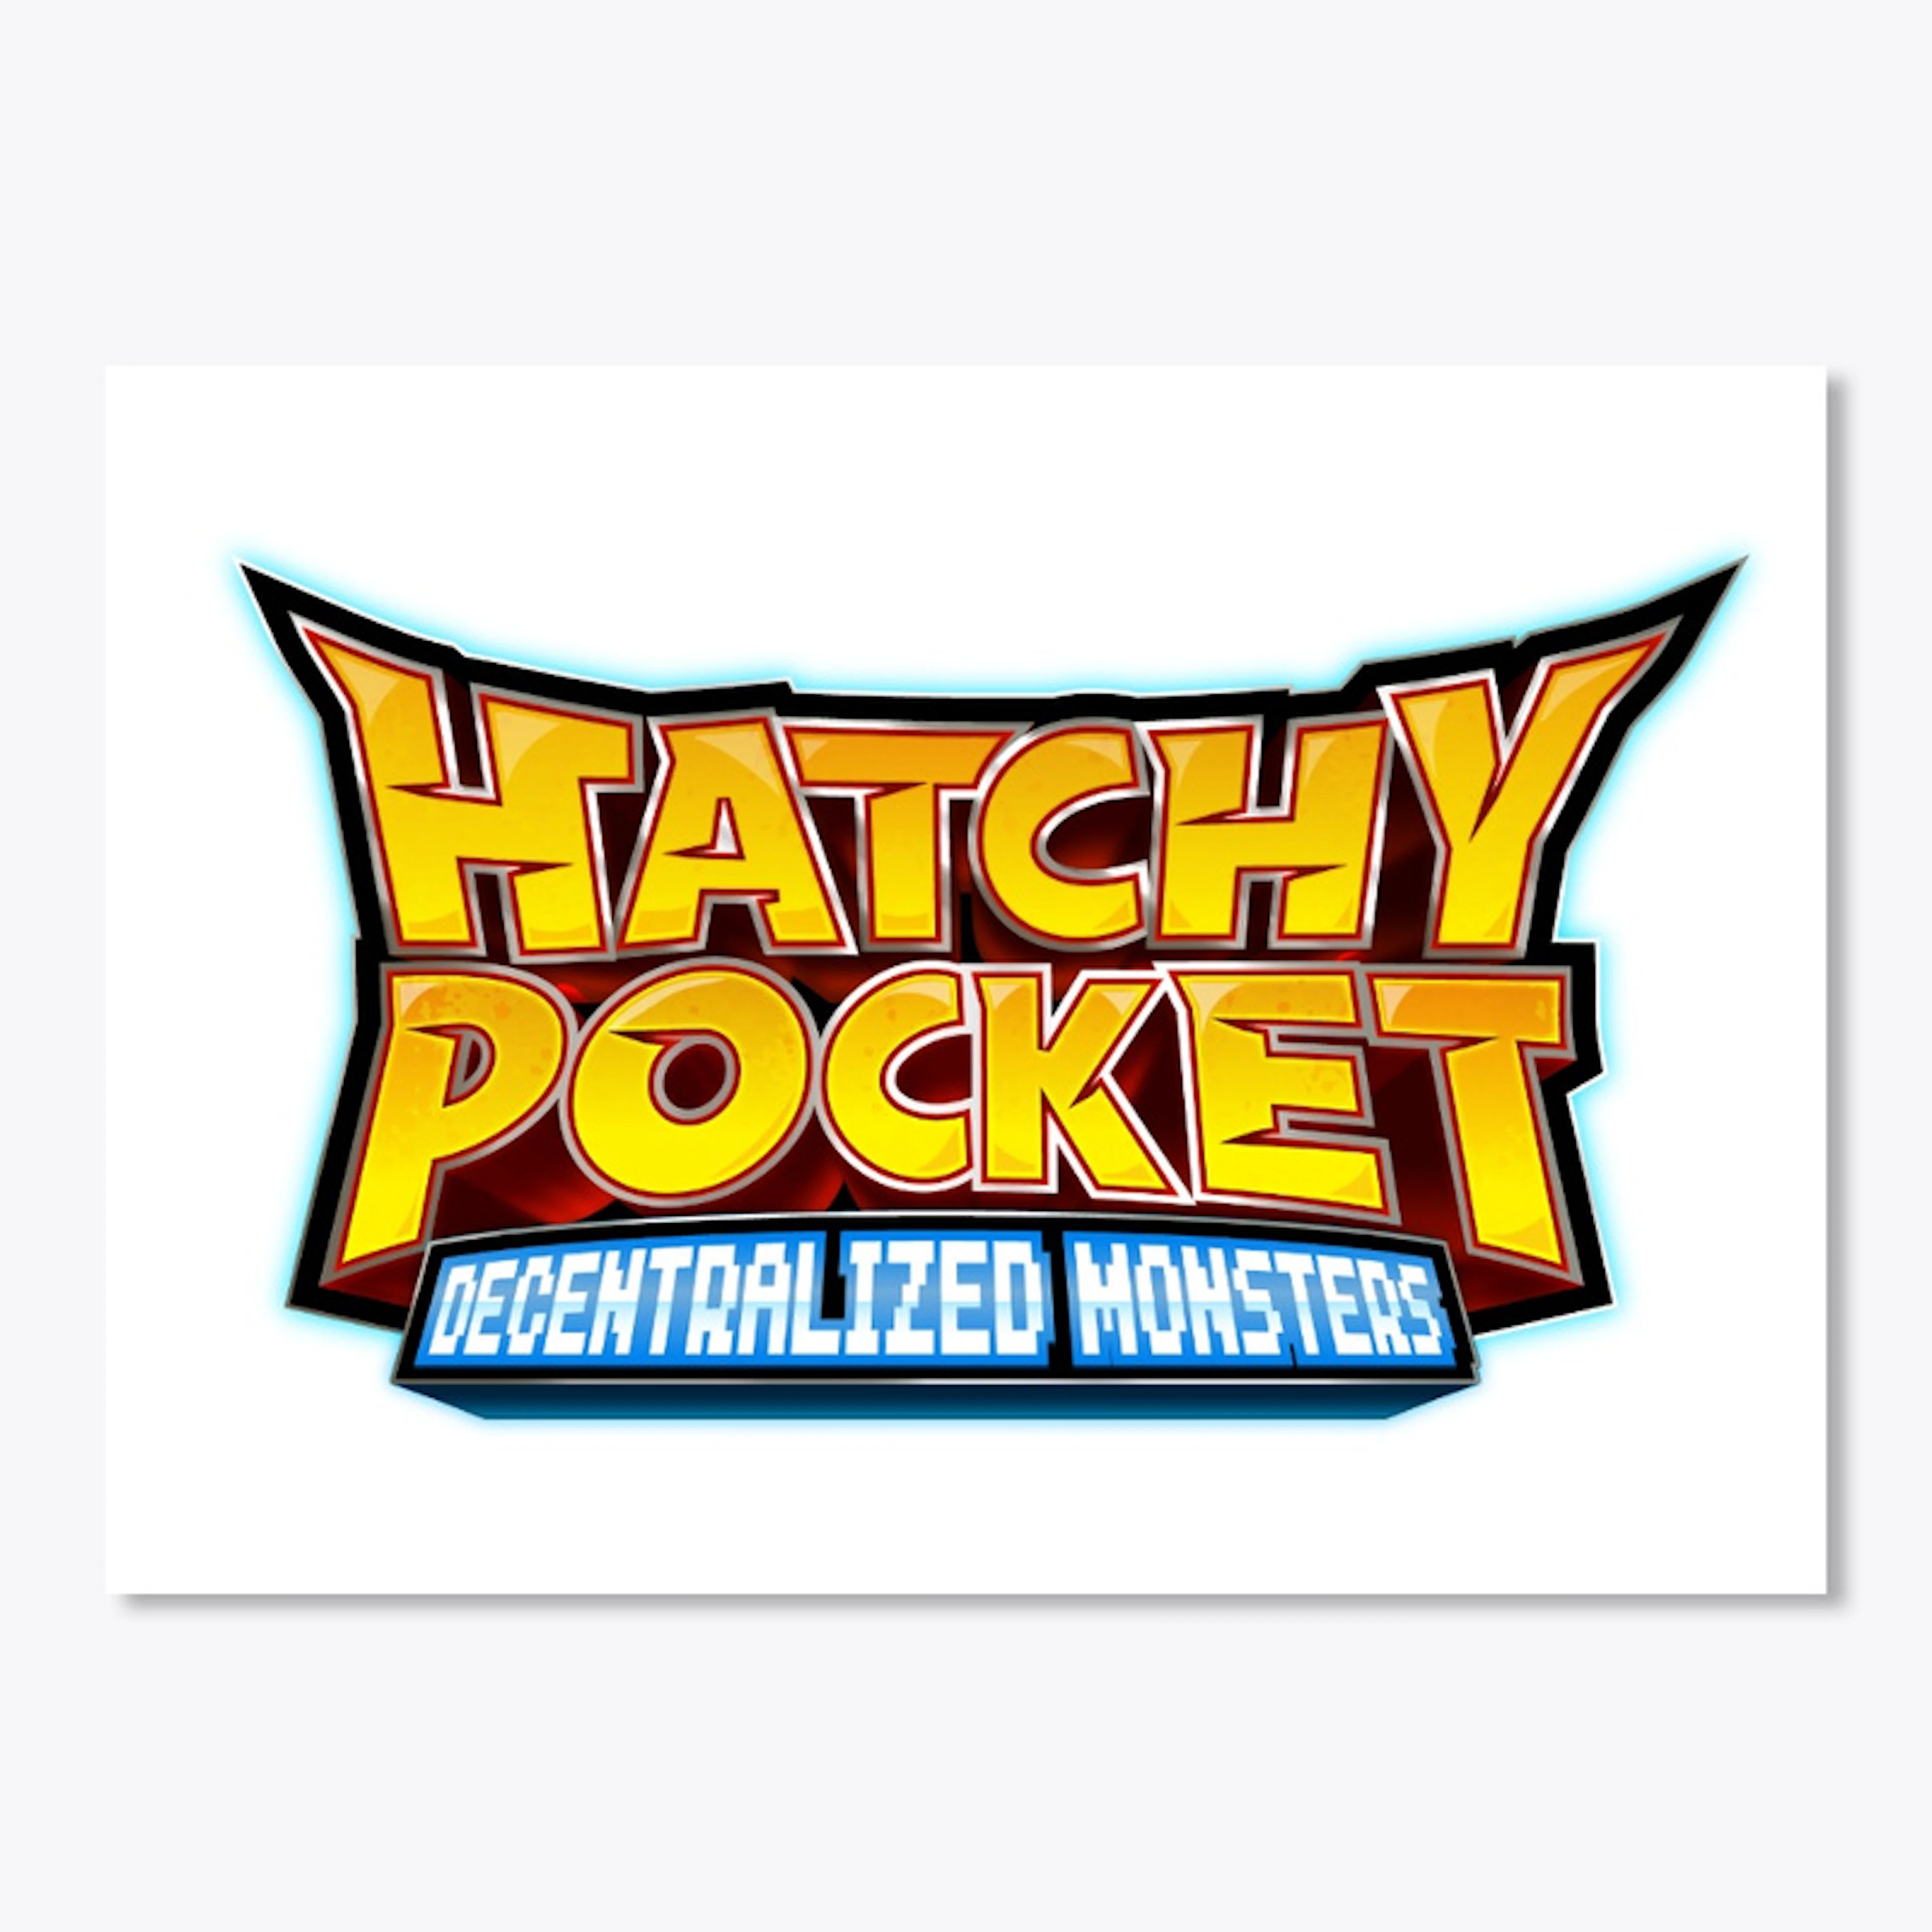 HatchyPocket Sticker